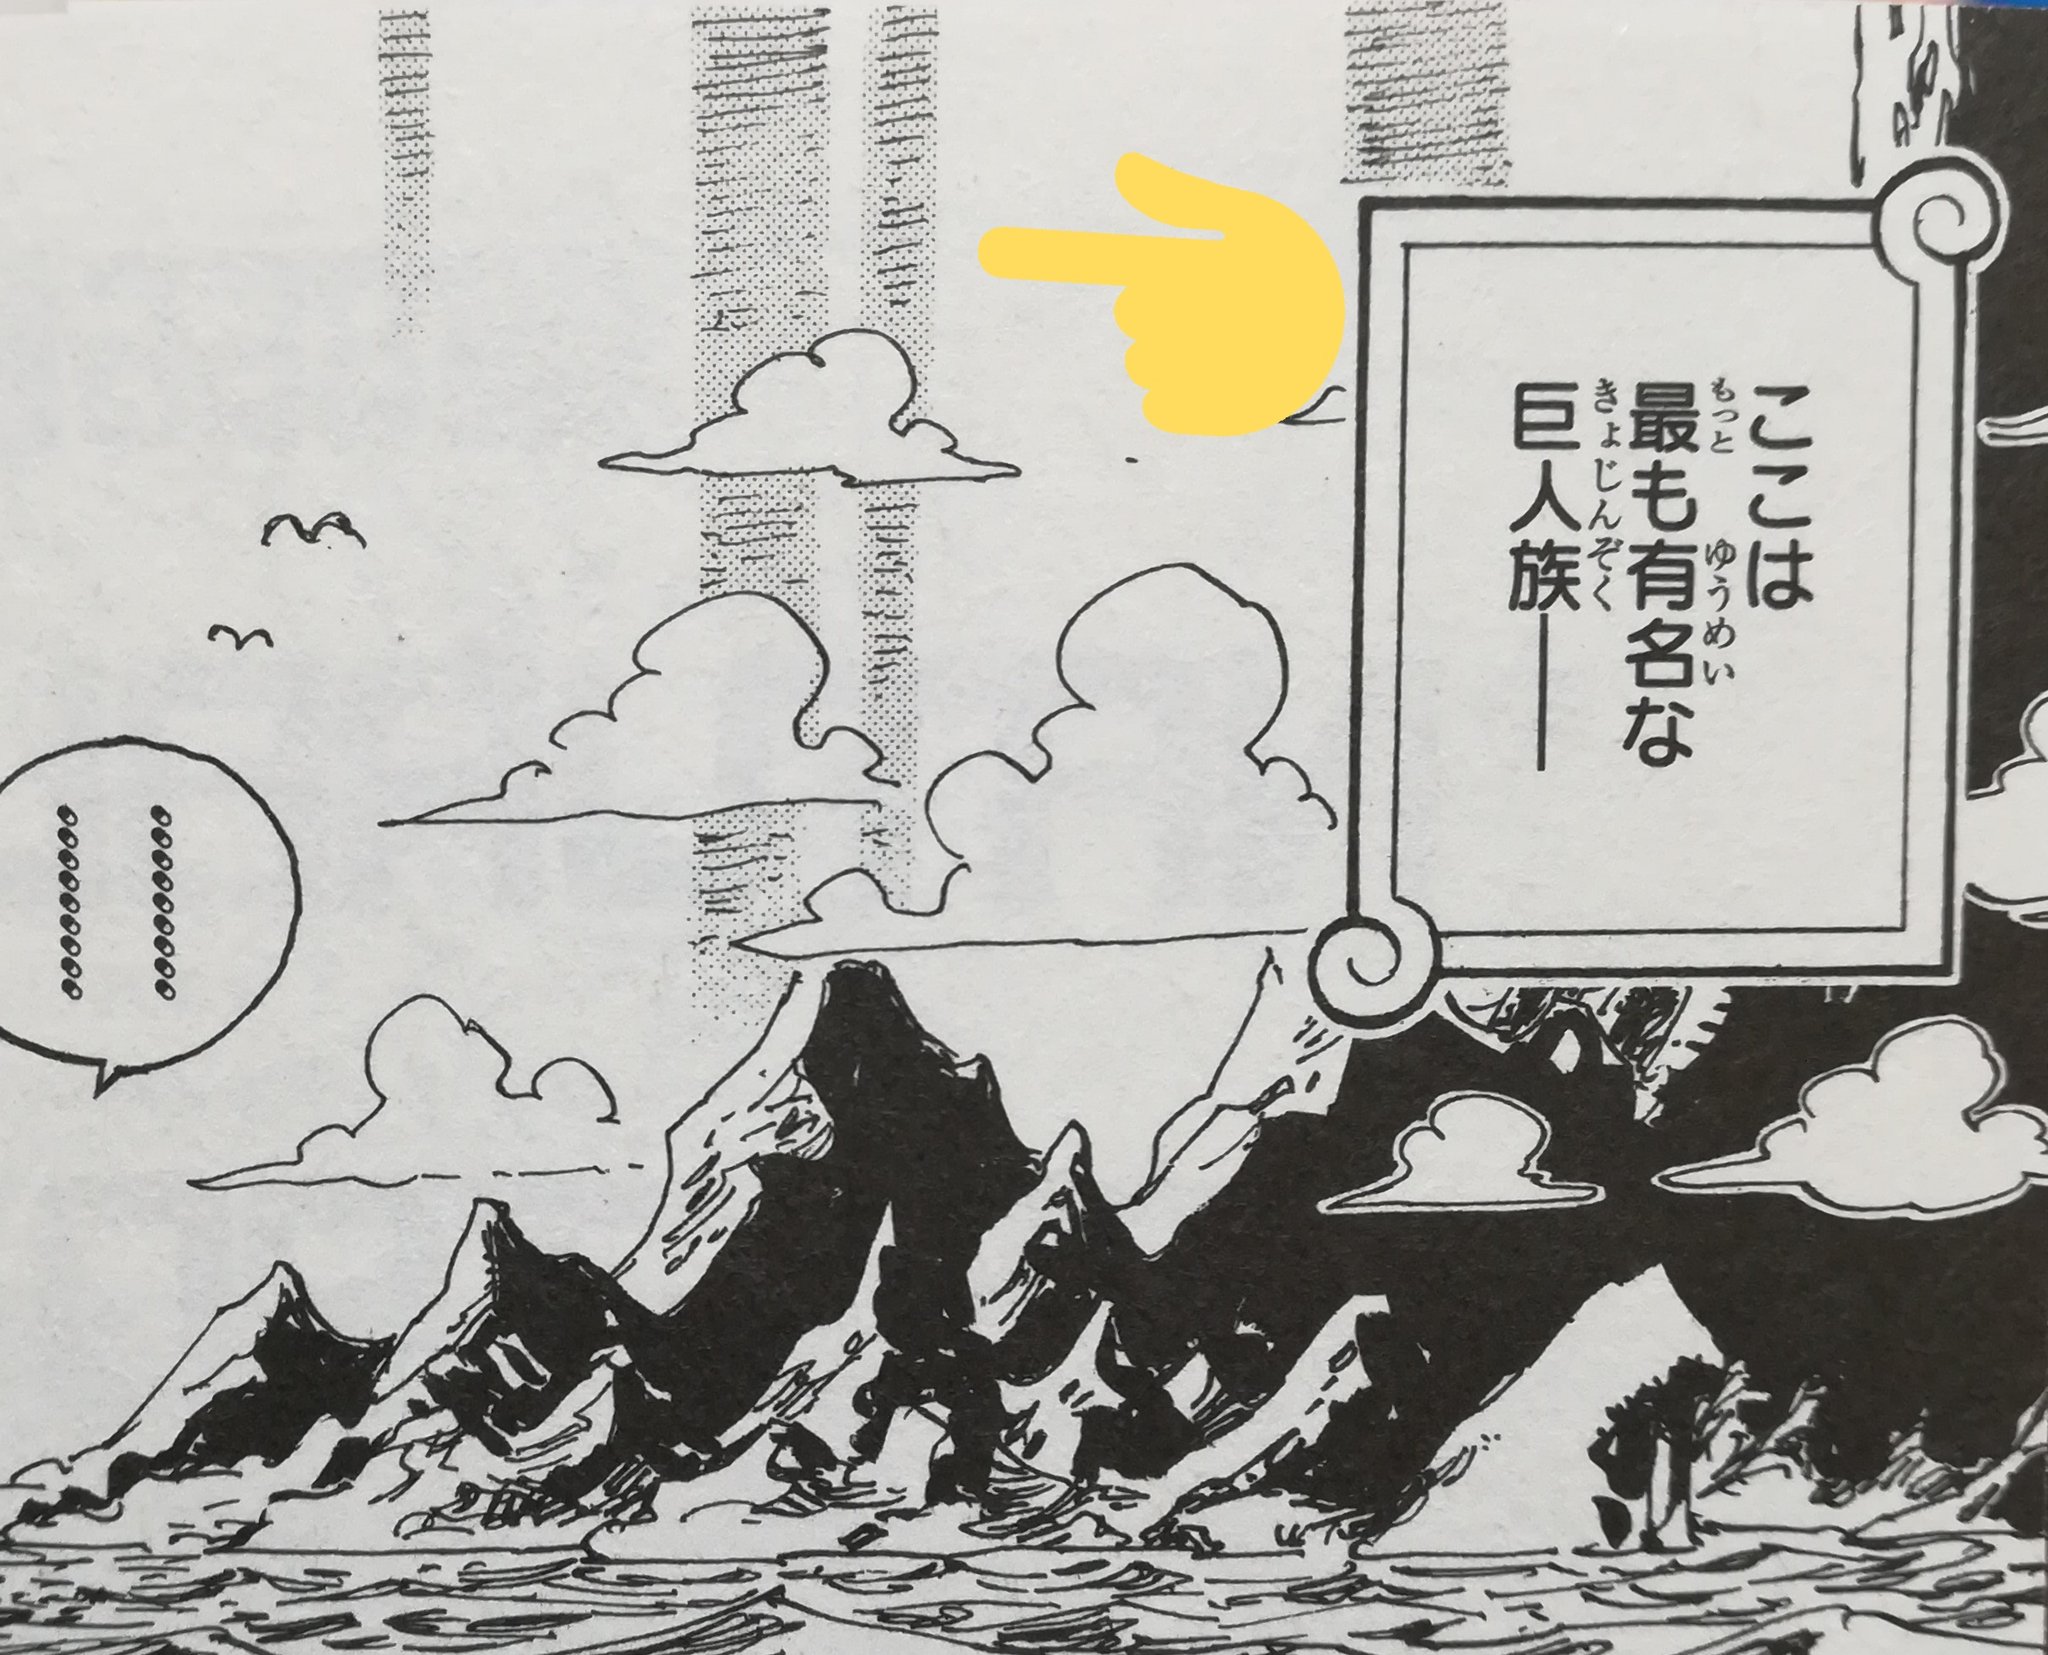 One Pieceが大好きな神木 スーパーカミキカンデ エルバフの島の背景にうっすら描かれたこの縦線は何を意味しているんでしょうかね んーーー T Co 1c3zlpc6xf Twitter